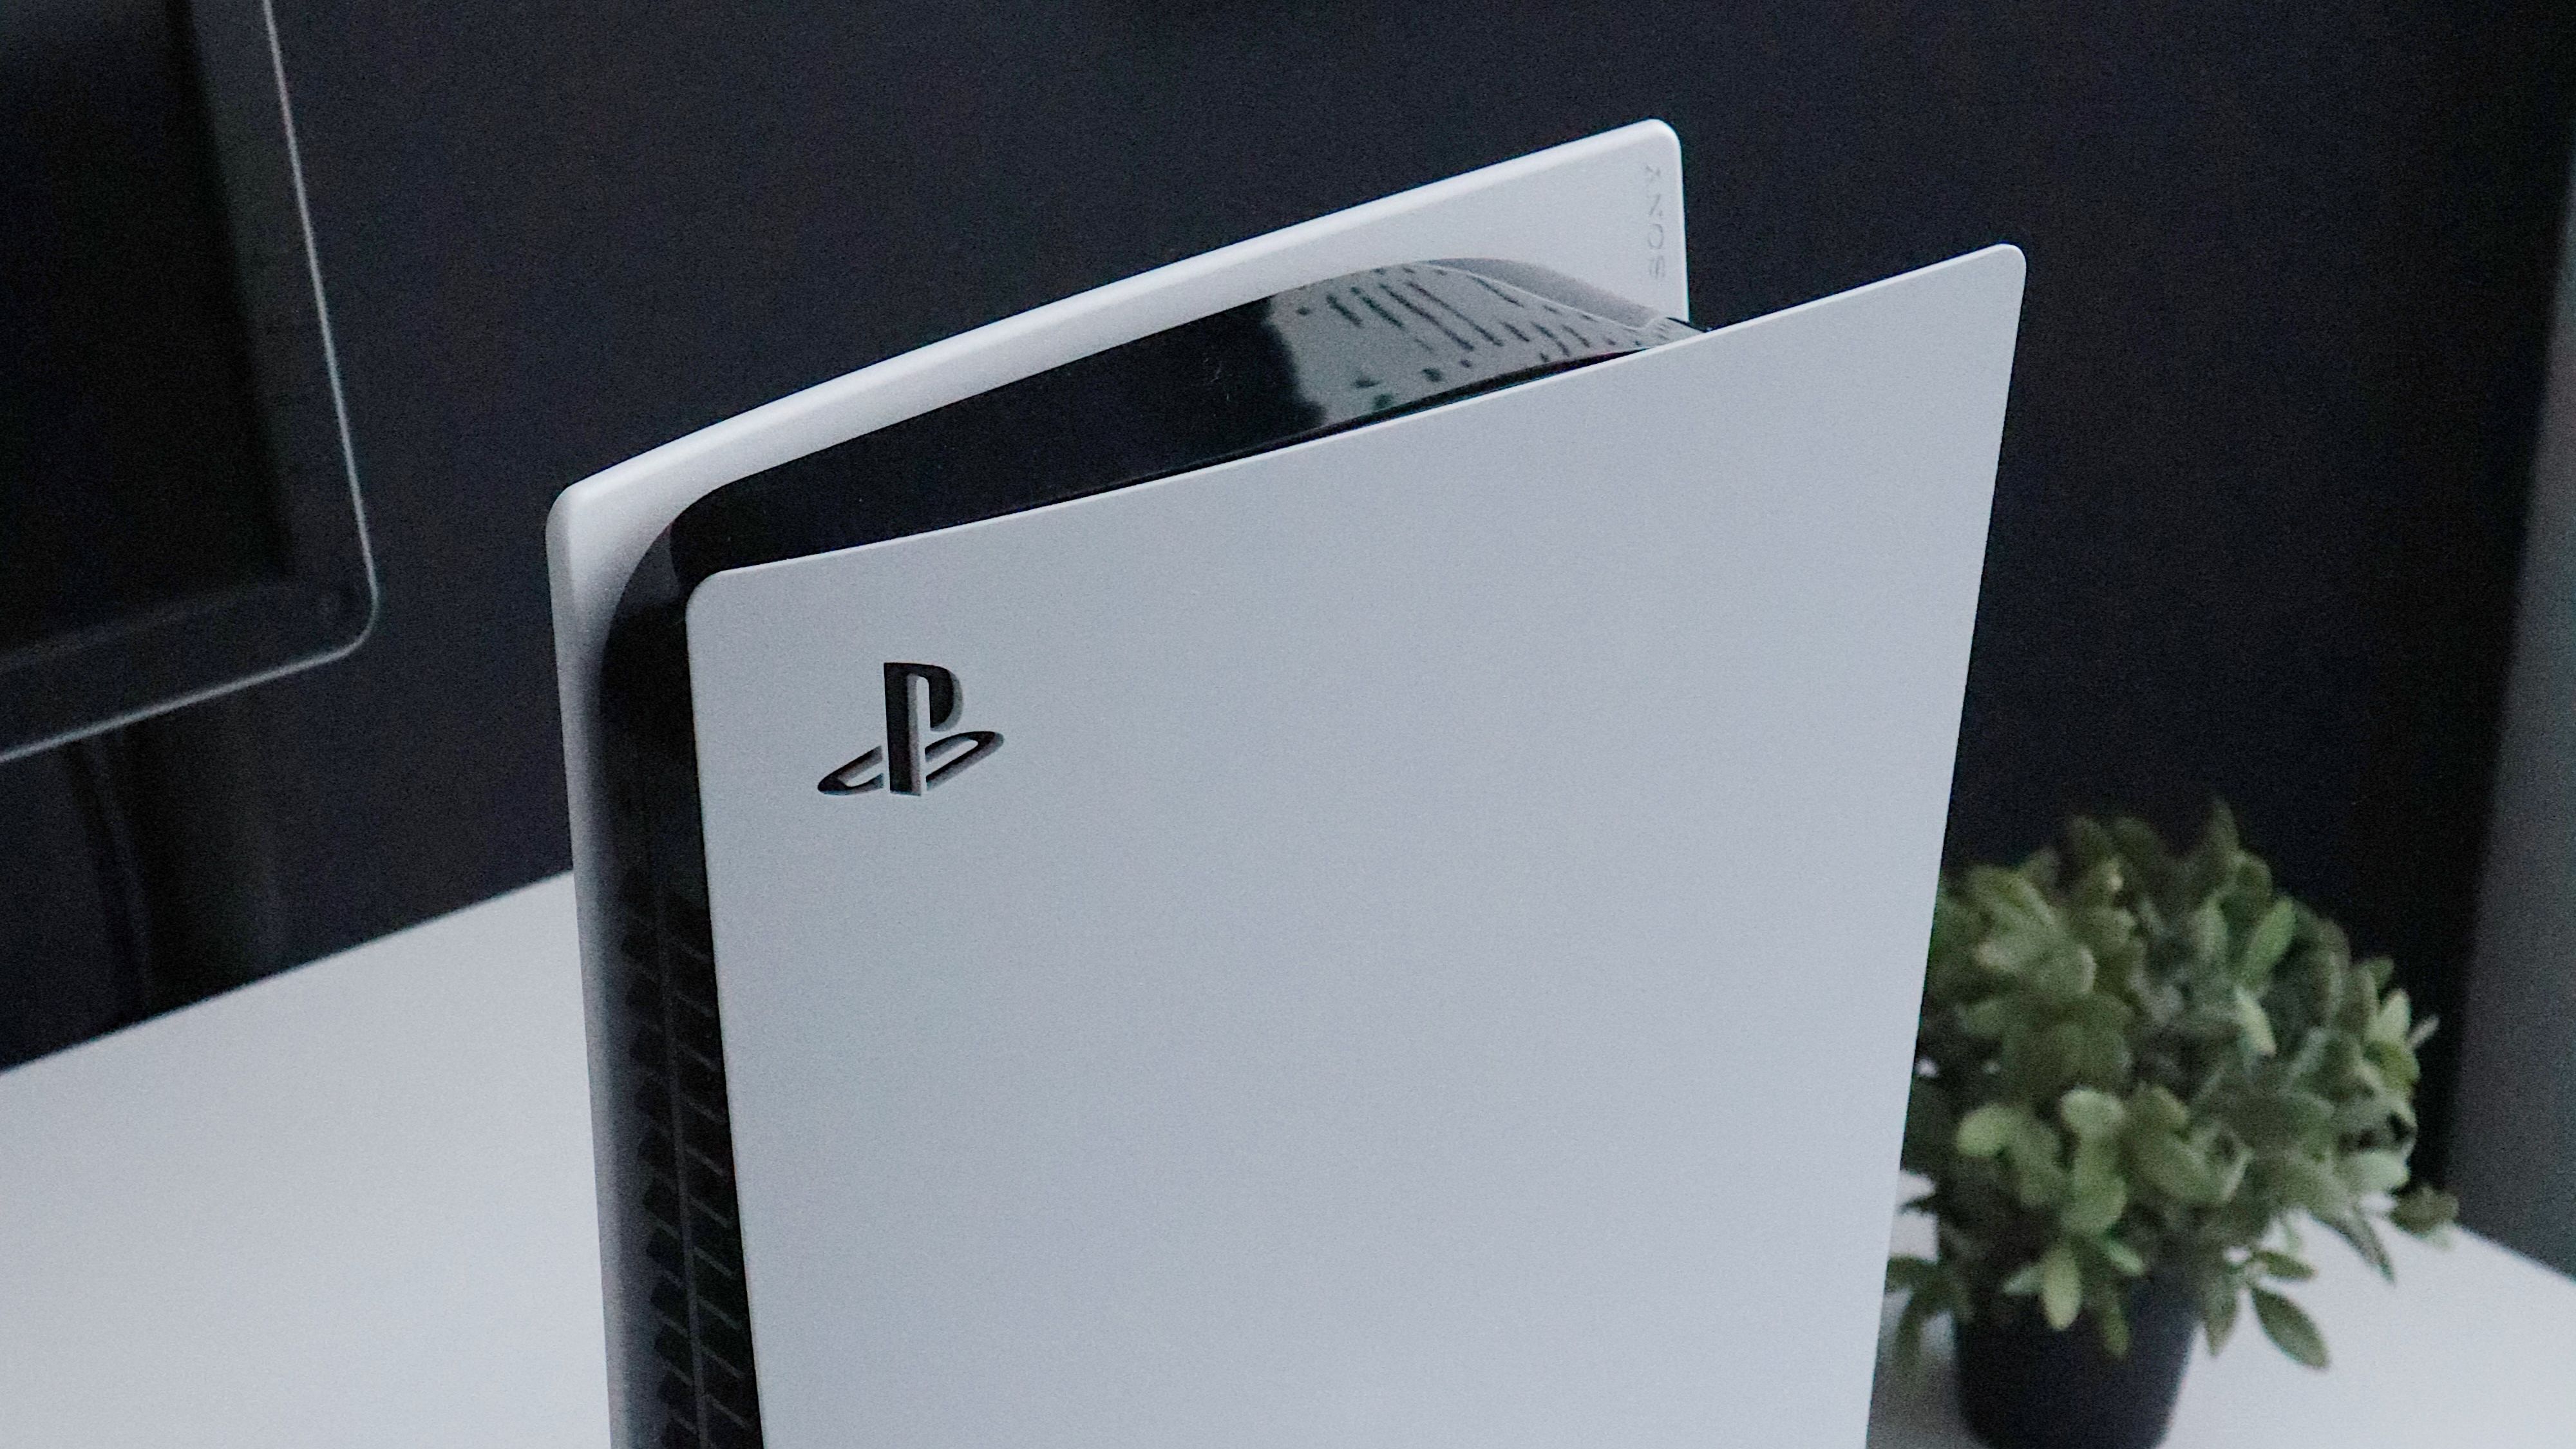 Exclusivo para PlayStation 4, Horizon Zero Dawn chegará ao PC até julho -  Canaltech